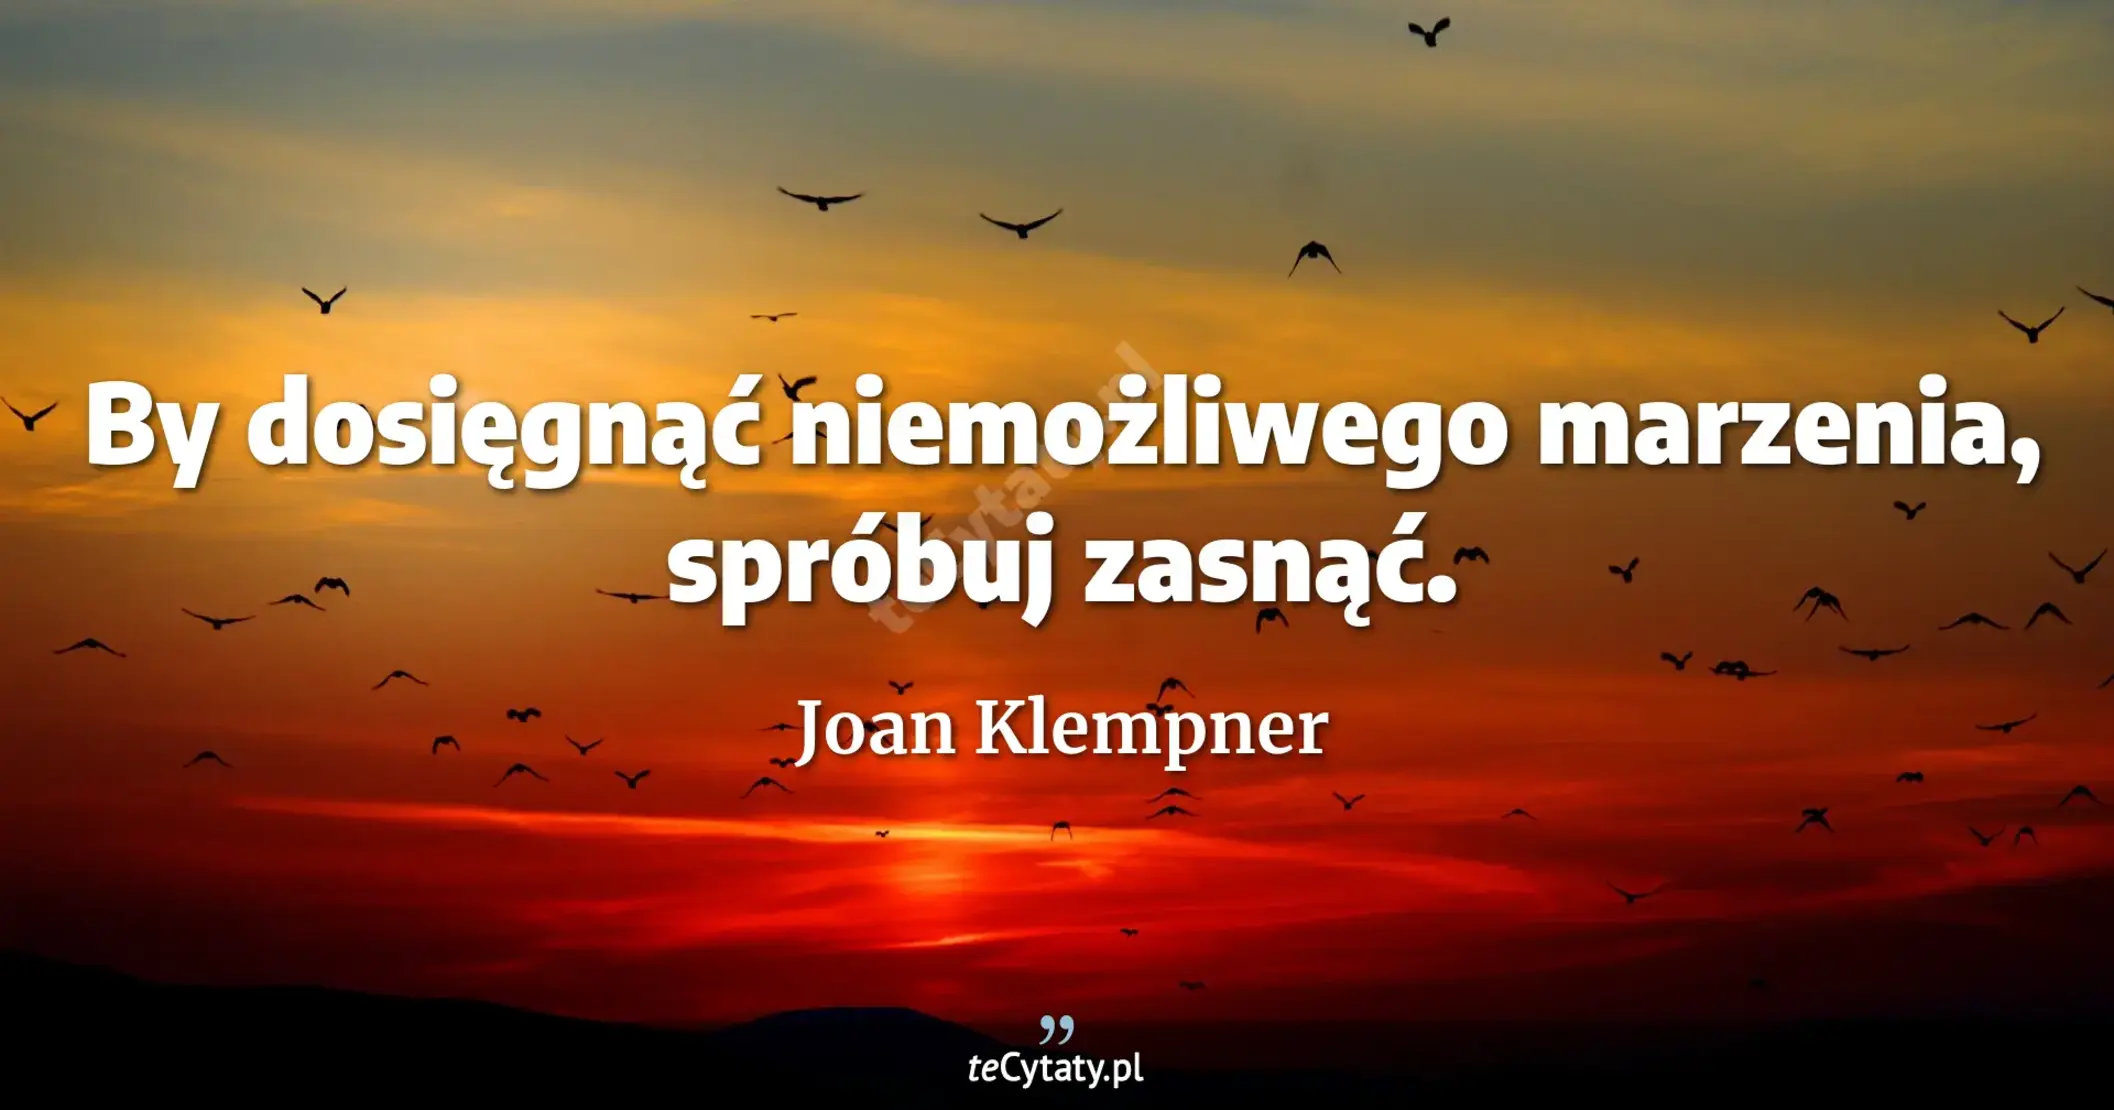 By dosięgnąć niemożliwego marzenia, spróbuj zasnąć. - Joan Klempner